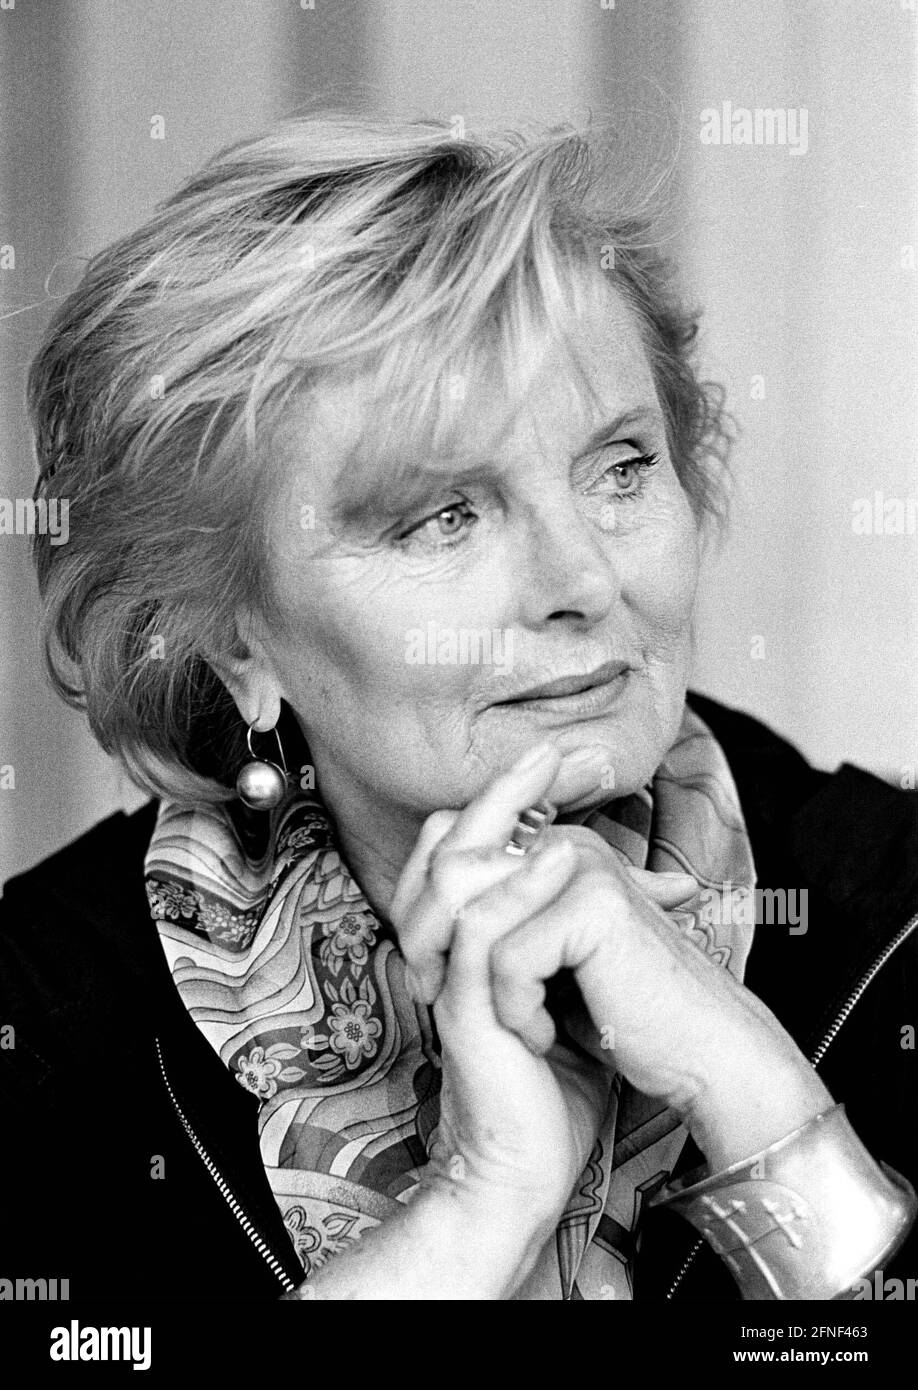 Ruth Maria Kubitschek (geboren 1931), deutsche Schauspielerin. Das Bild wurde während einer Lesung im Harenberg City Center, Dortmund, aufgenommen. [Automatisierte Übersetzung] Stockfoto